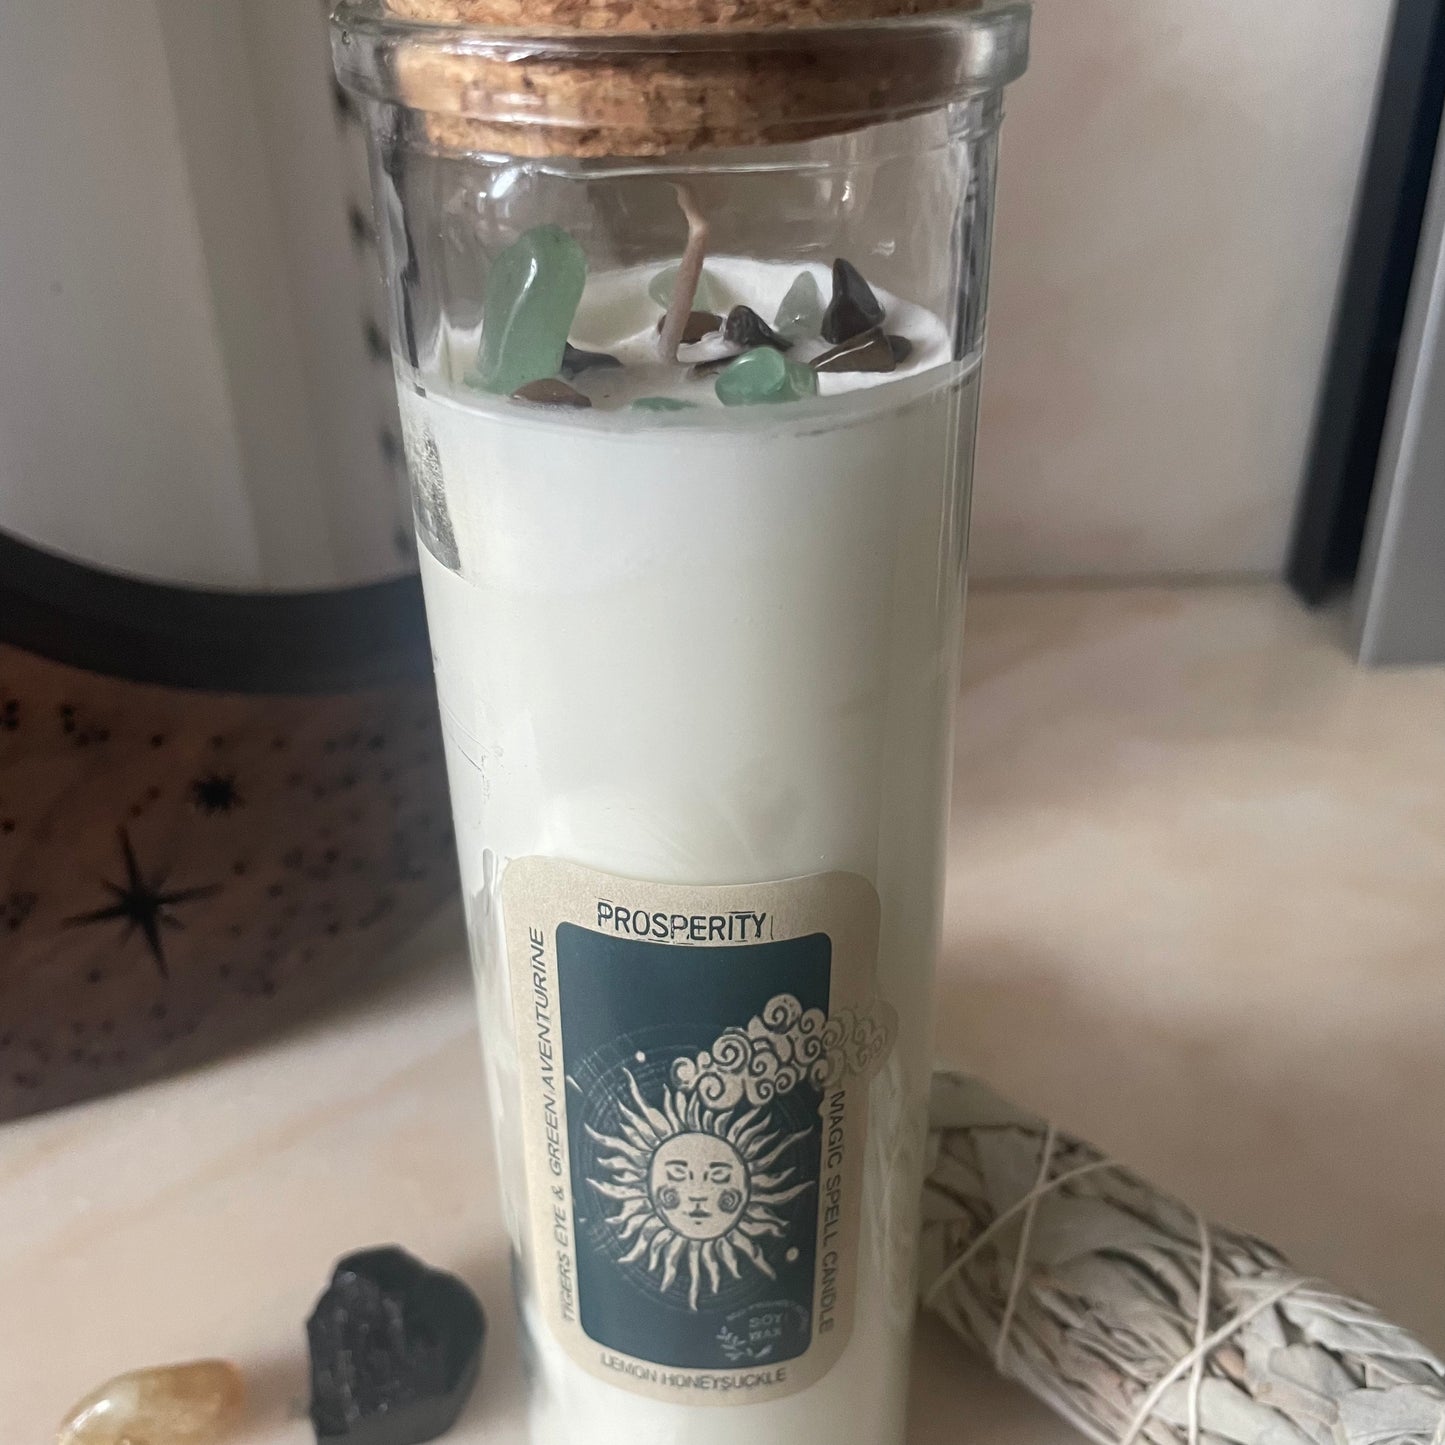 Magic Spell Candle - Prosperity (Lemon Honeysuckle) 💴